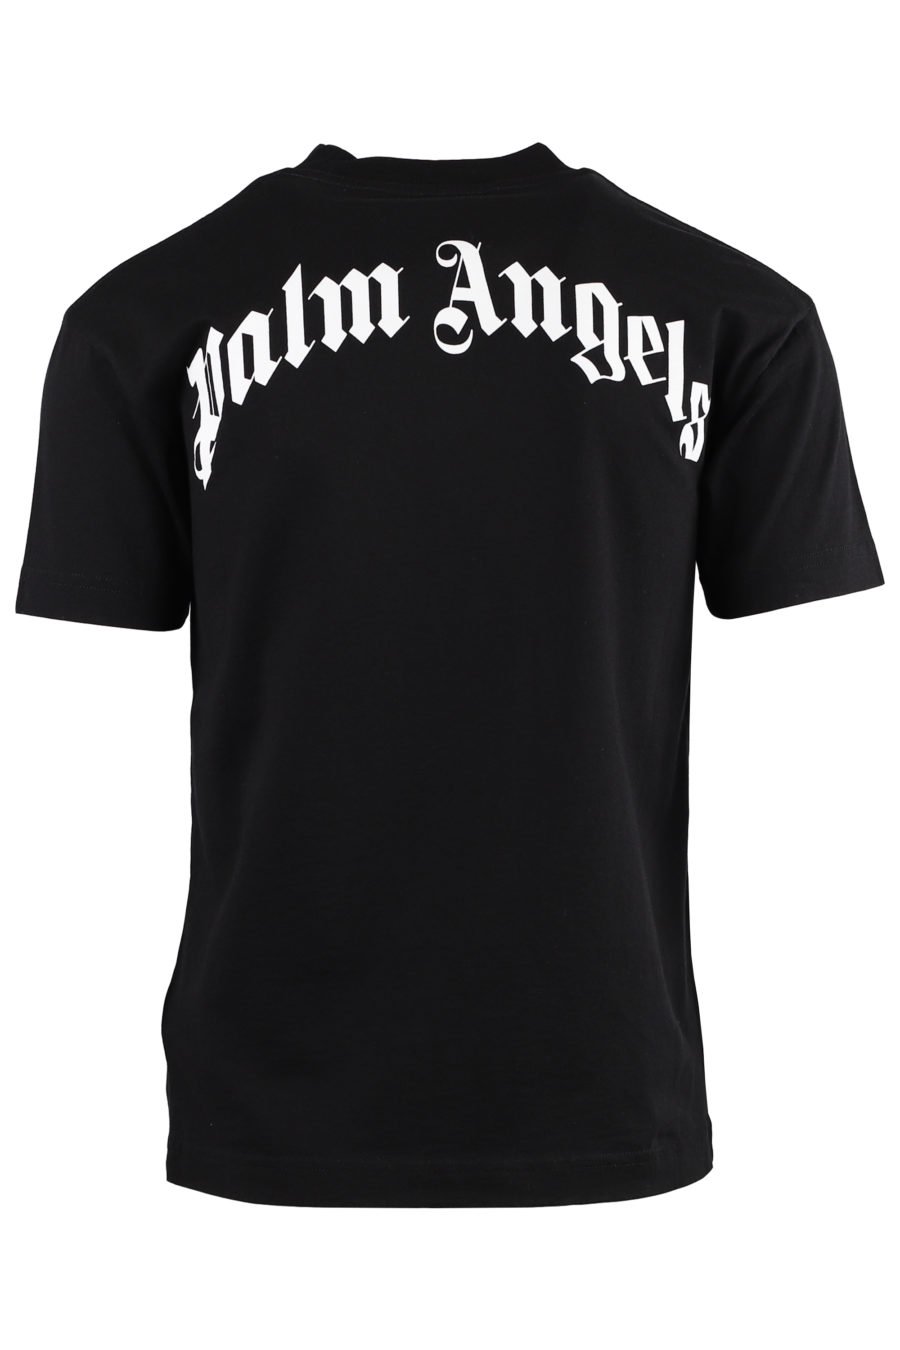 Schwarzes T-Shirt mit Bär und Logo auf dem Rücken - IMG 1329